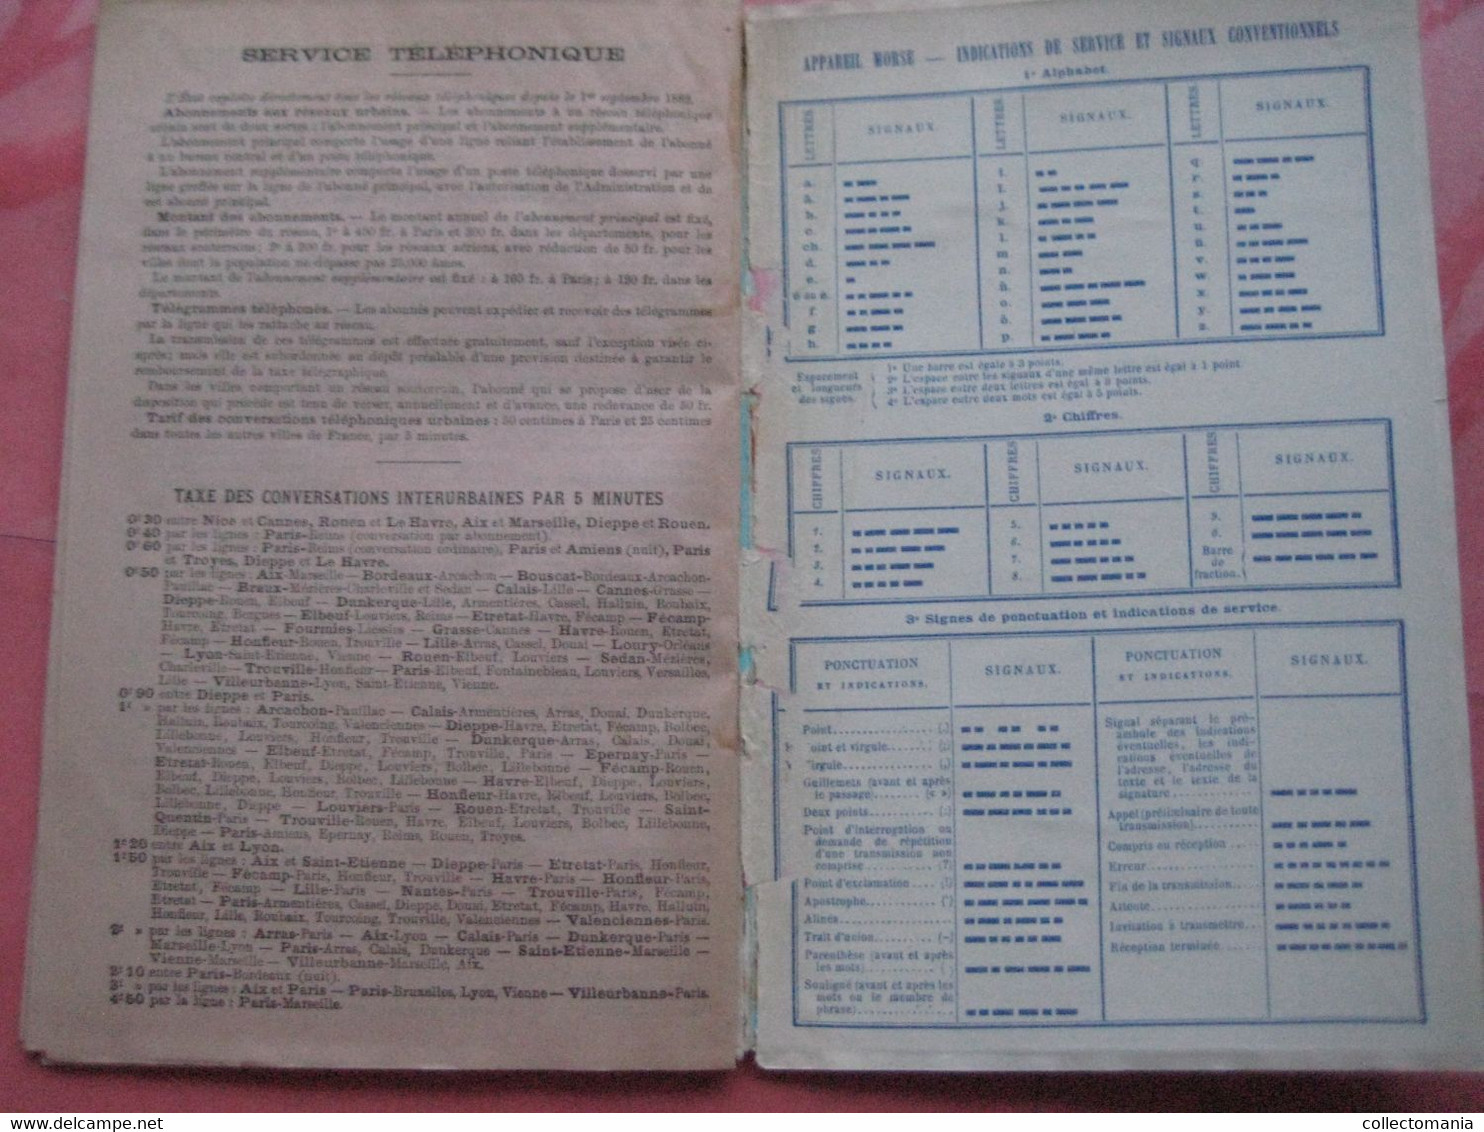 Calendrier Almenach c1893 Indicateurs et Nomenclature Télégraphiques & TELEPHONE de France et colonies 21cmX14cm